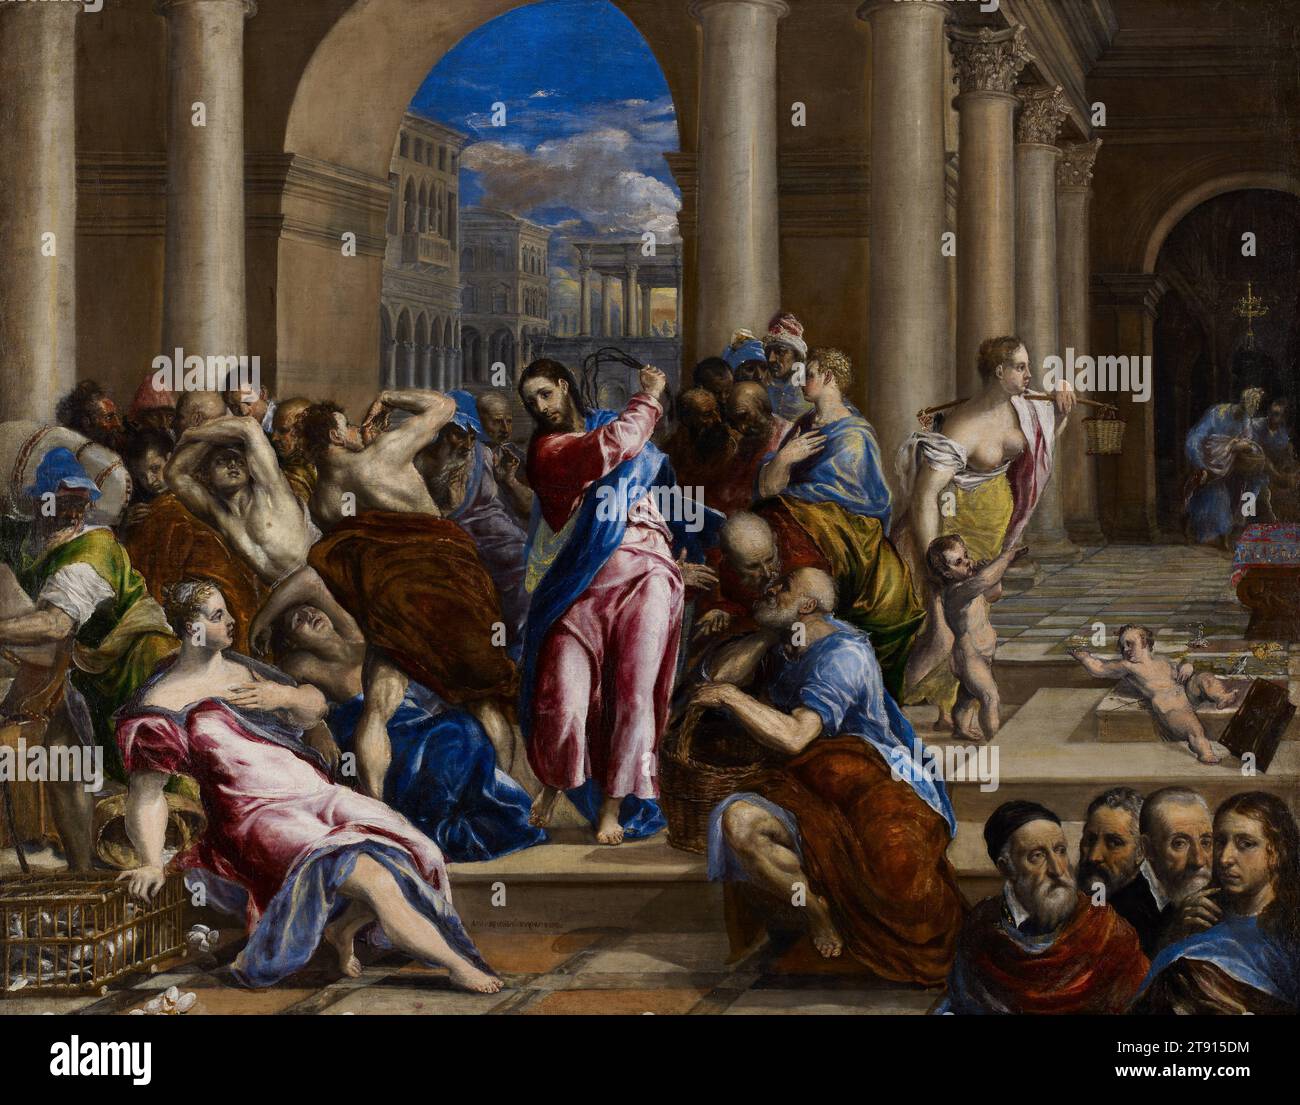 Cristo che guida i cambiavalute dal Tempio, c. 1570-75, El Greco (Domenikos Theotokopoulos), greco, 1541–1614, 46 x 59 pollici. (116,84 x 149,86 cm) (tela)45 1/2 x 58" (115,57 x 147,32 cm) (vista)60 x 72 1/2 x 3 pollici (152,4 x 184,15 x 7,62 cm) (cornice esterna), olio su tela, Spagna, XVI secolo, l'espulsione di Cristo dei cambiavalute che profanavano il tempio di Gerusalemme fu un tema popolare in Italia in questo periodo. Per i cattolici, l'immagine simboleggiava la purificazione della Chiesa attraverso la riforma interna e l'espulsione degli eretici protestanti. El Greco raffigura un turbinio caotico Foto Stock